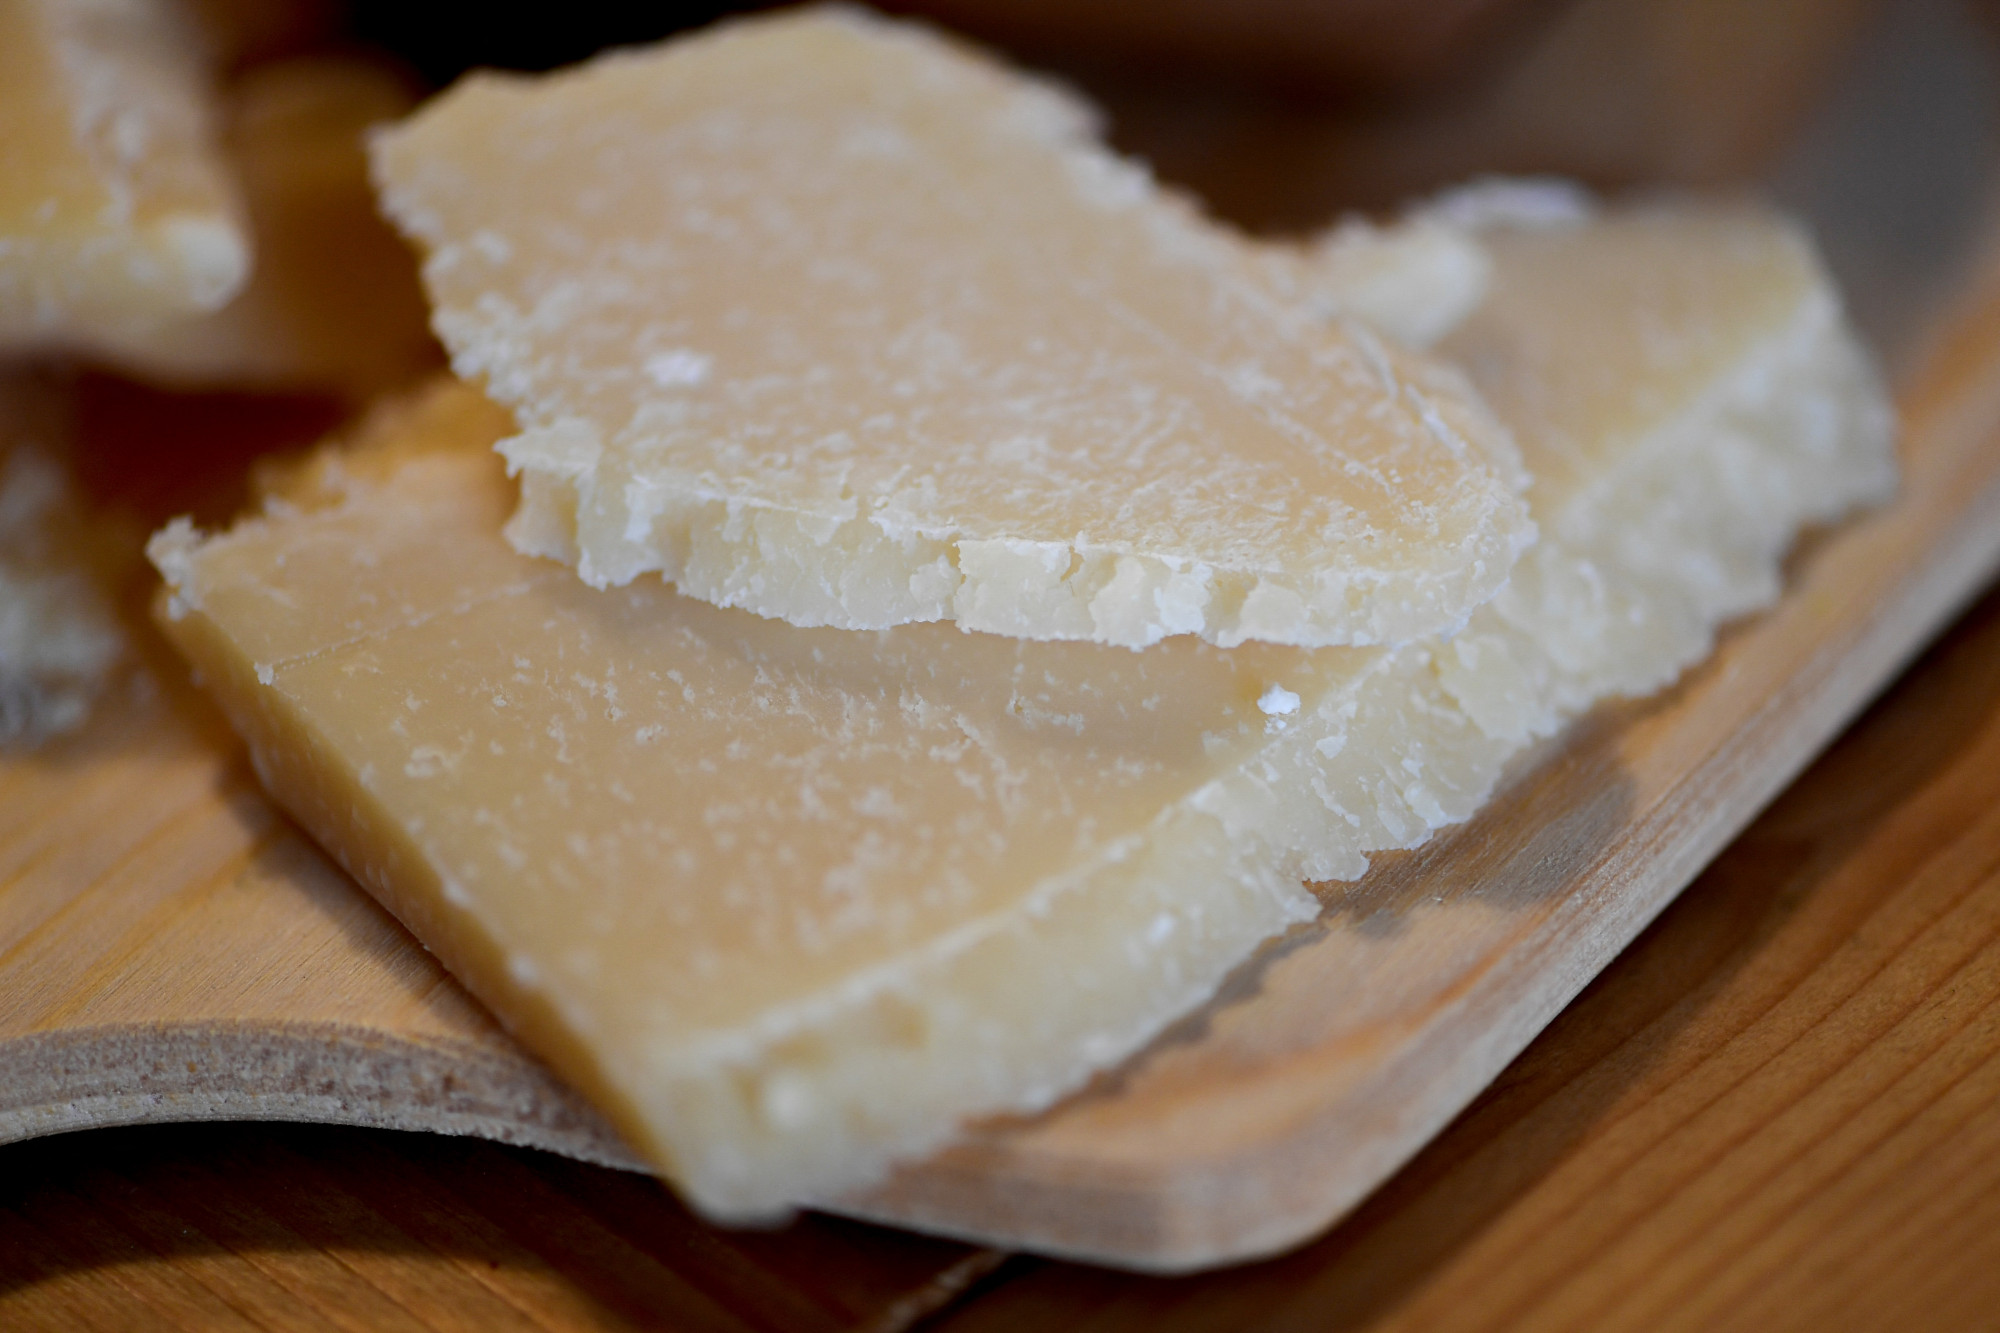 Boldogtalanok az olasz sajtkészítők az aszály miatt, veszélyben a parmezán